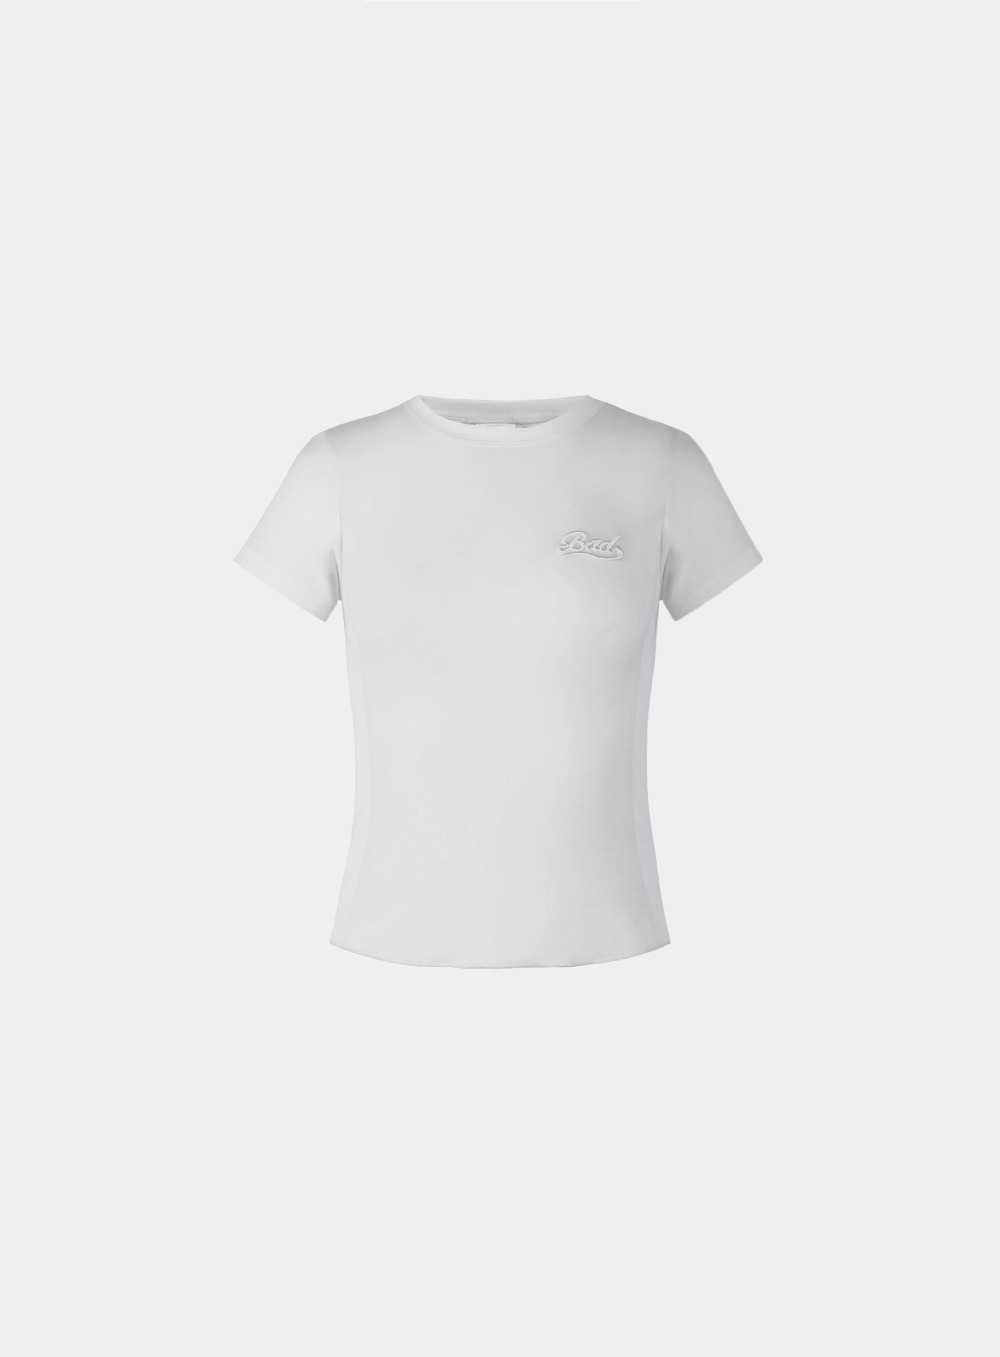 세컨드 스킨 베이비 티셔츠 - 크림